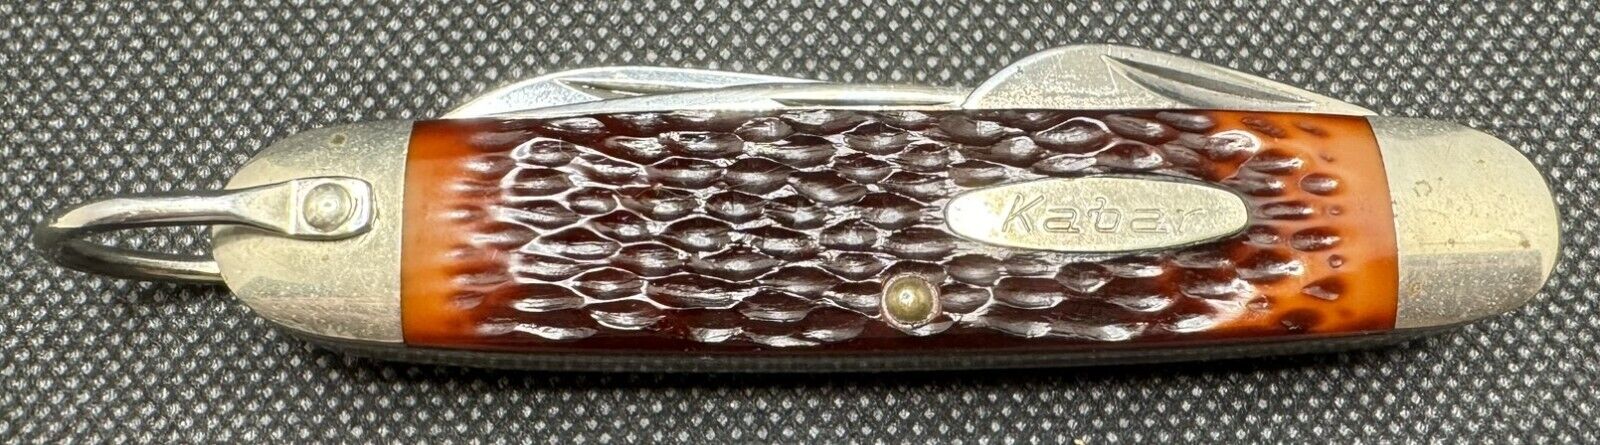 Vintage 4 Blade Kabar 1152 Pocket Knife Boy Scout Delrin Gigged Handle USA Made